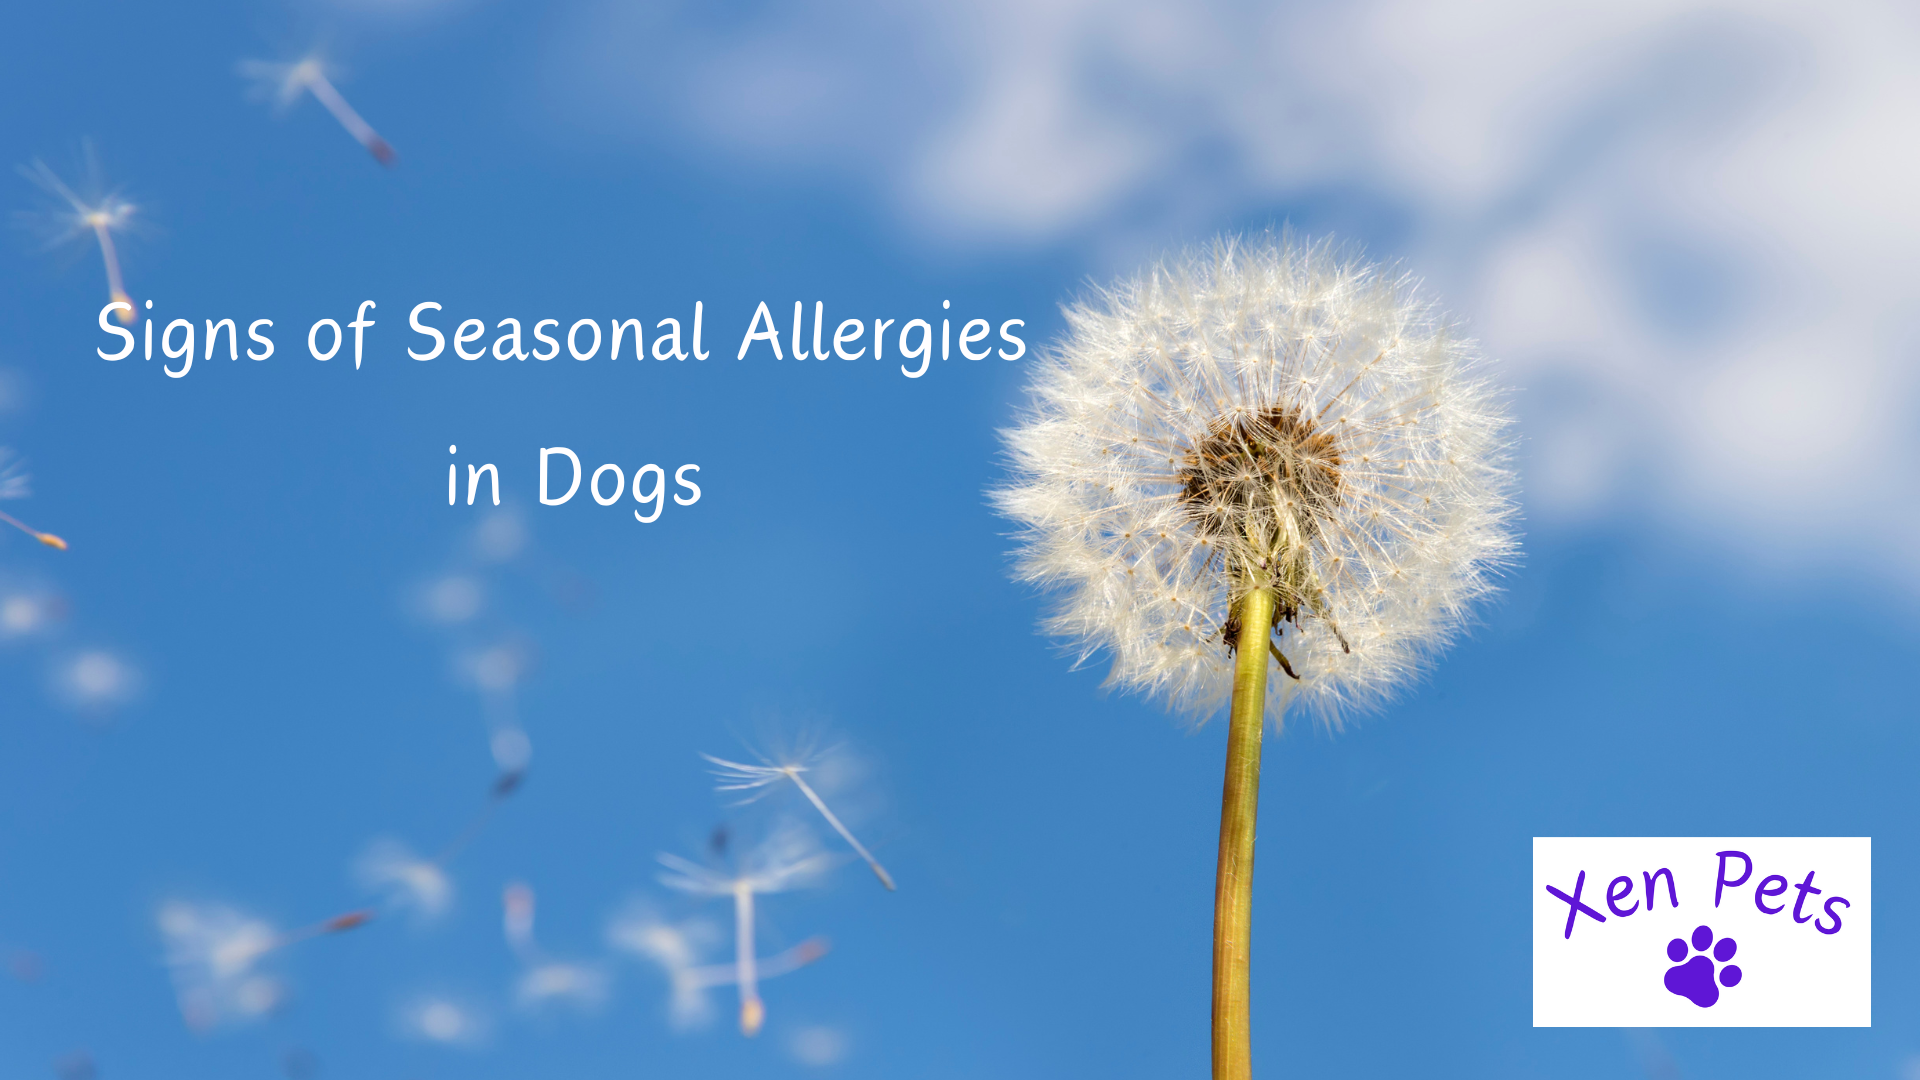 Signs of seasonal allergies in dogs.